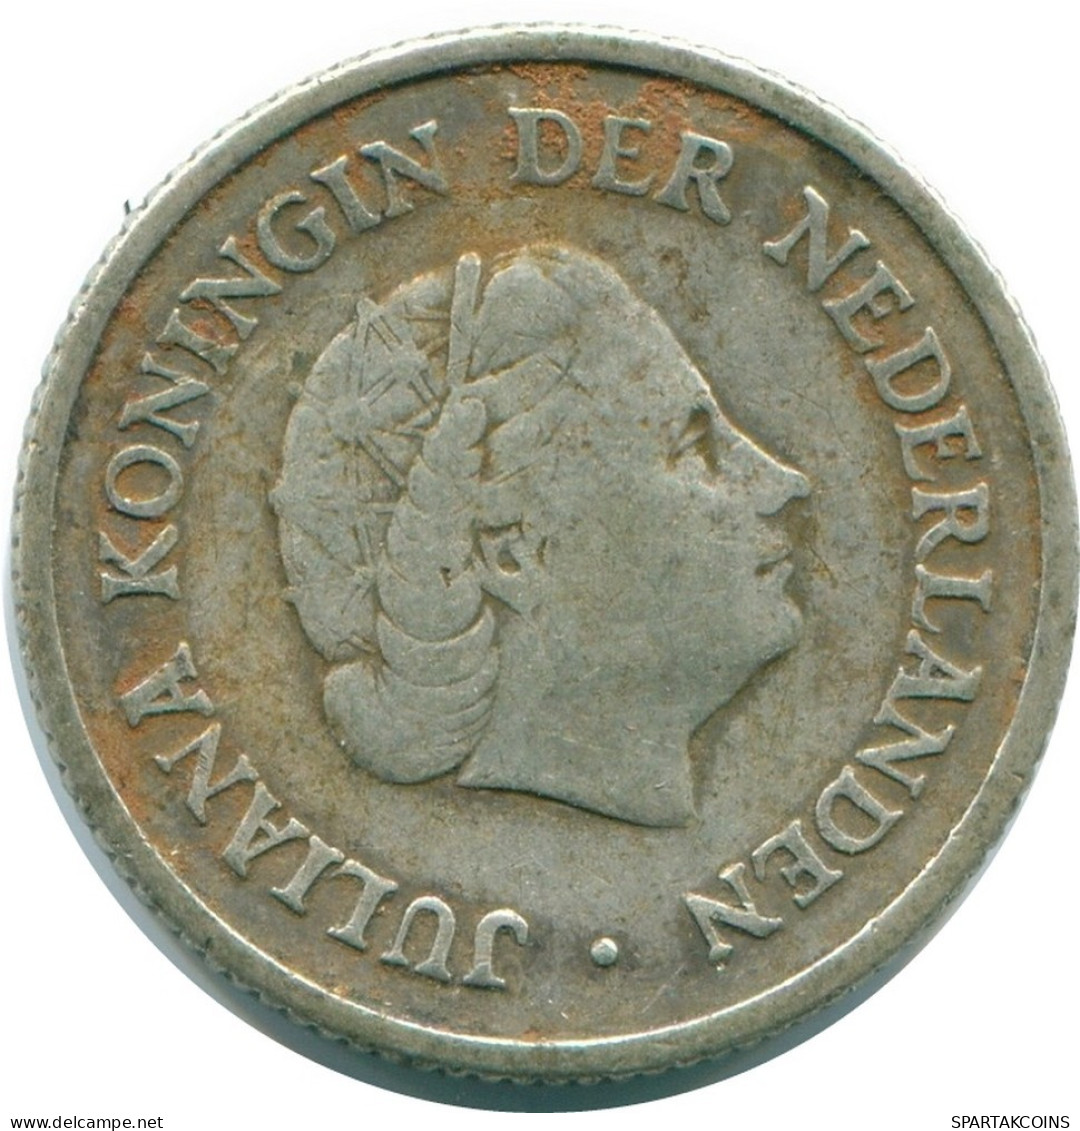 1/4 GULDEN 1954 NIEDERLÄNDISCHE ANTILLEN SILBER Koloniale Münze #NL10901.4.D.A - Antilles Néerlandaises